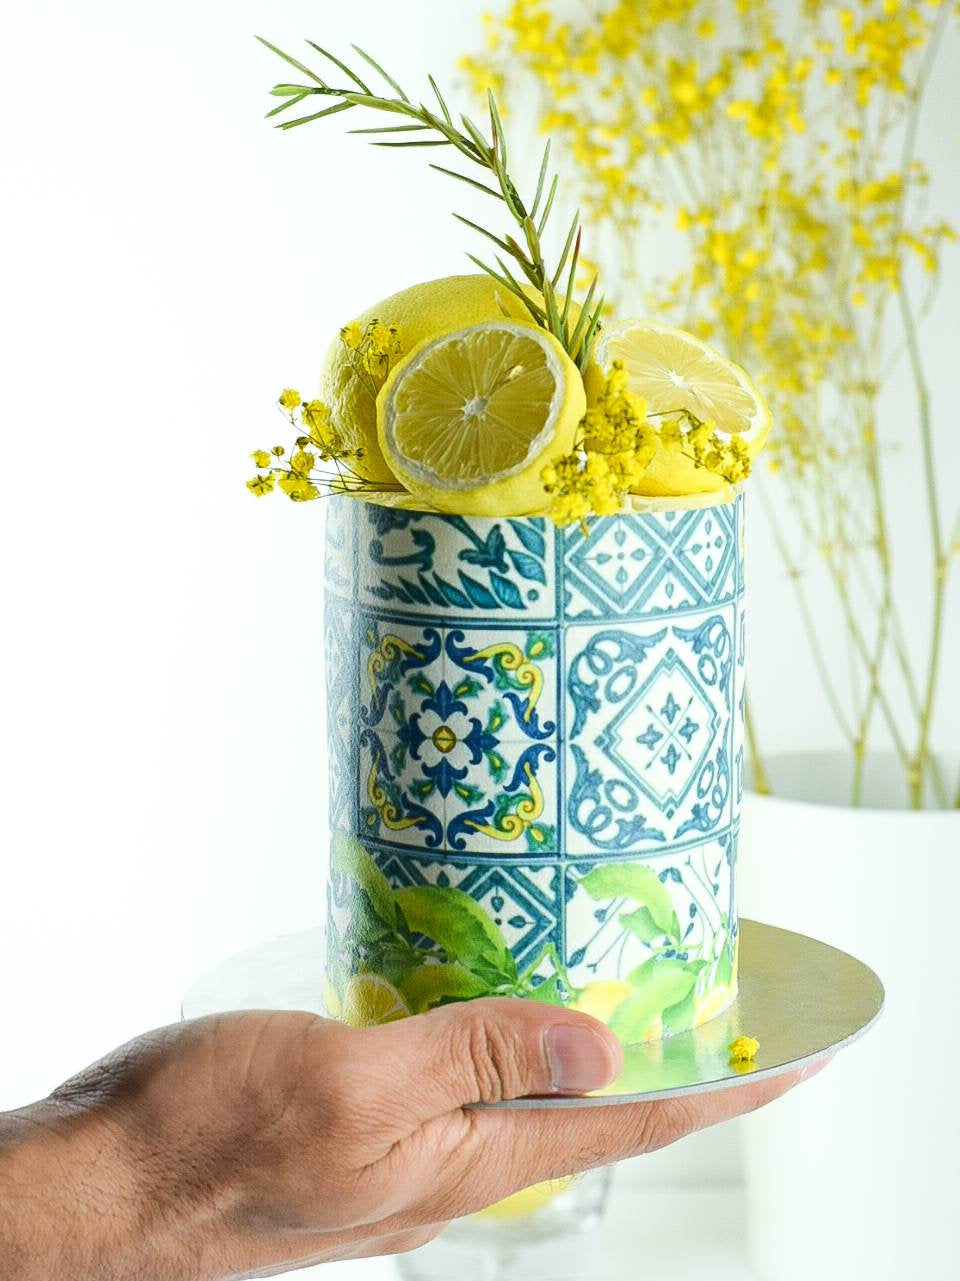 Amalfi Tiles Cake Wrap - A4 Edible Image - Mediterranean Icing Sheet